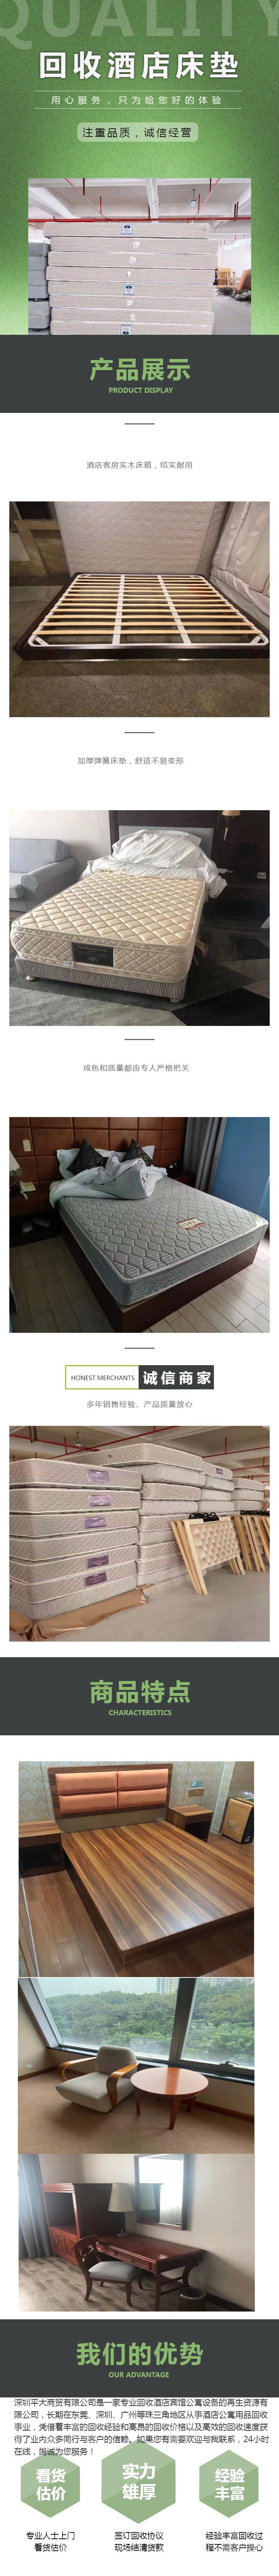 深圳高价收购酒店床垫 广州回收酒店床垫